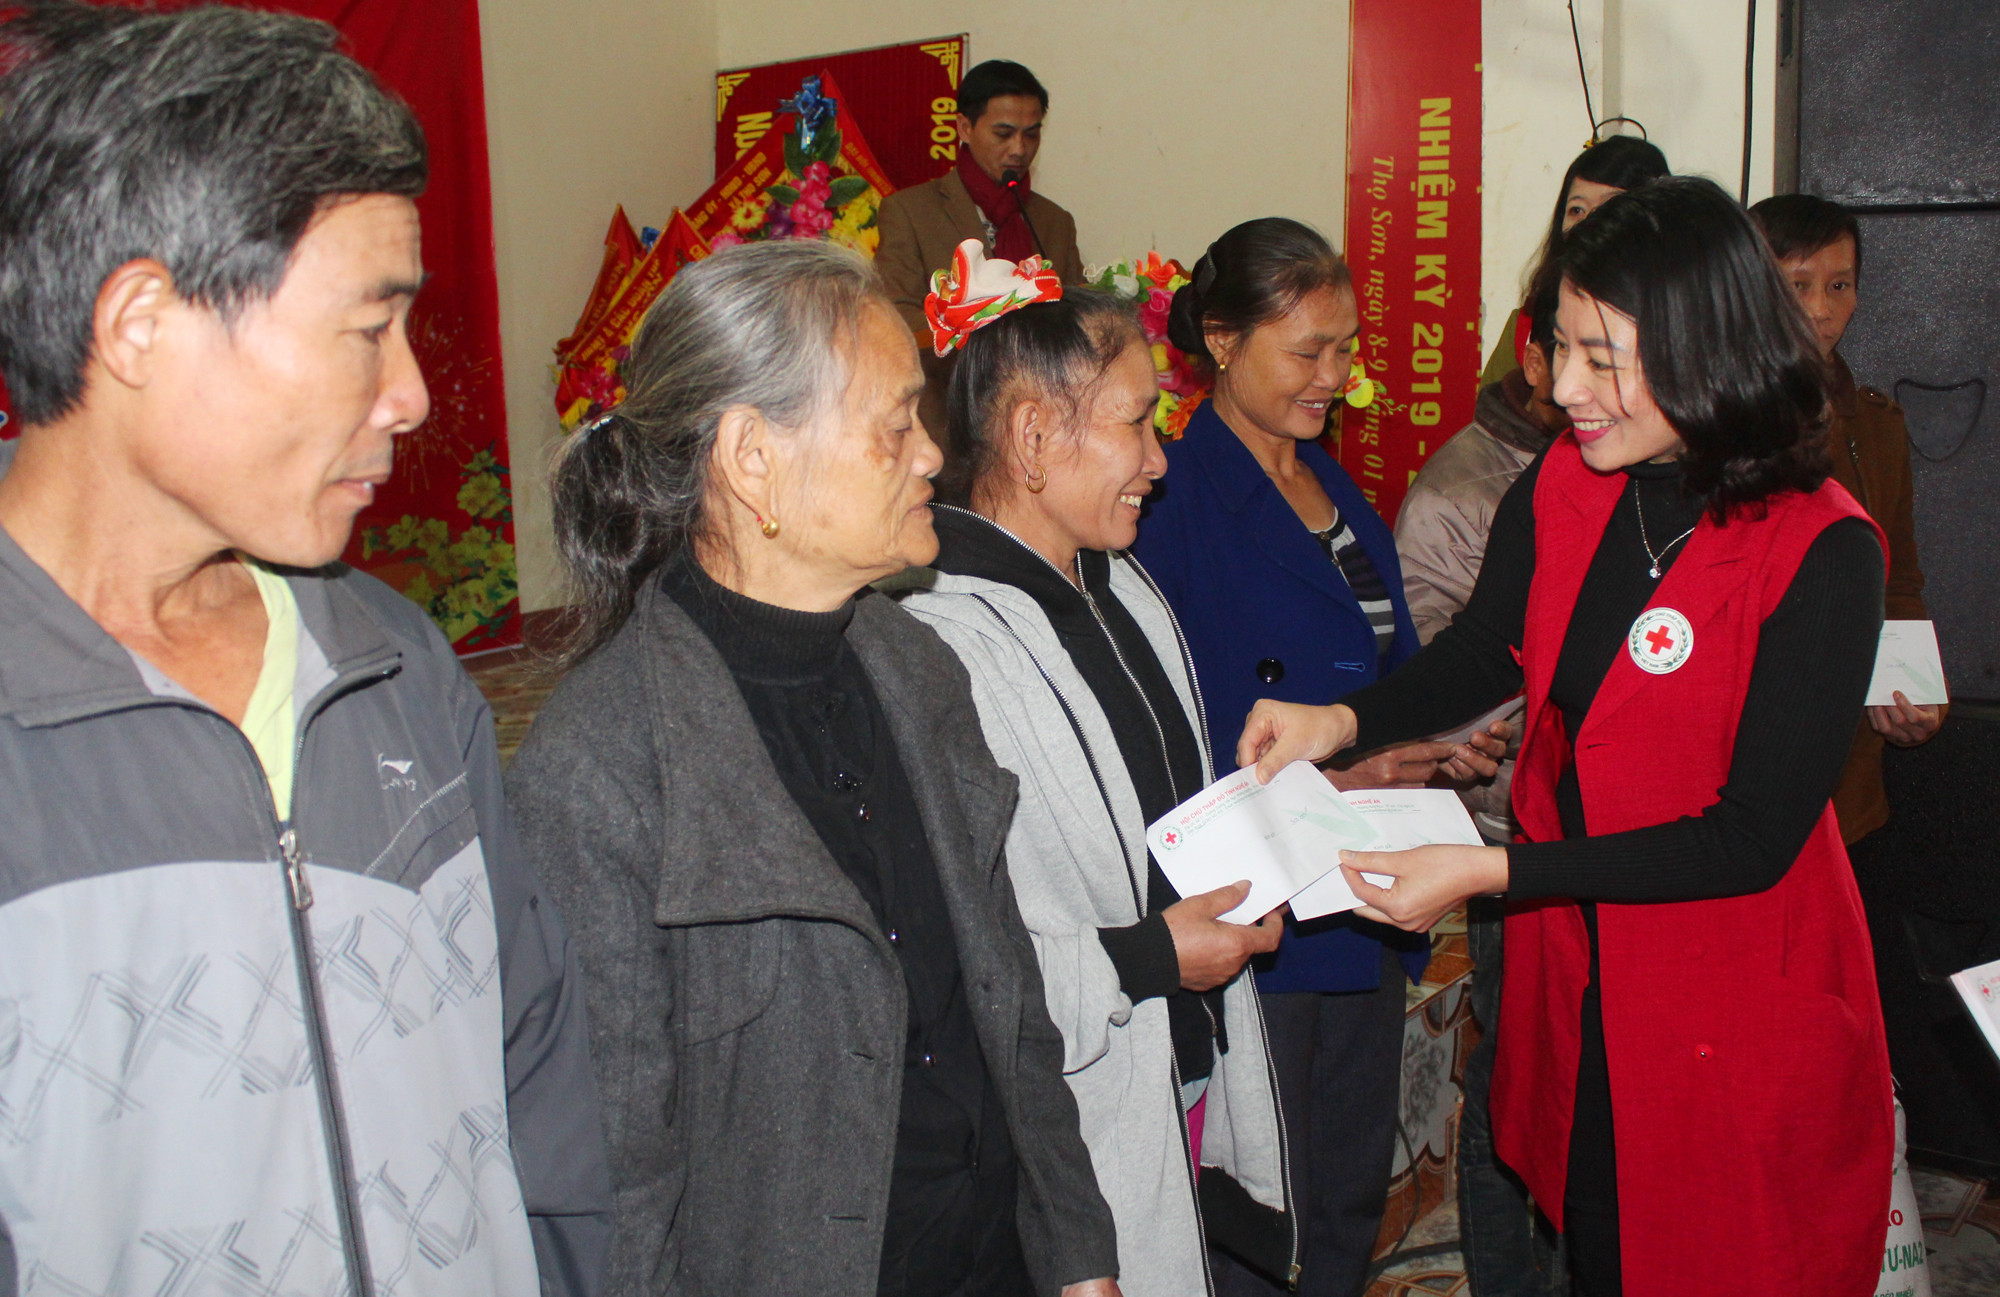 Đồng chí Lương Thị Hồng - Chủ tịch Hội chữ thâp đỏ Nghệ An trao quà cho các hộ nghèo, nạn nhân da cam ở Thọ Sơn, Anh Sơn. Ảnh: Nguyễn Hải